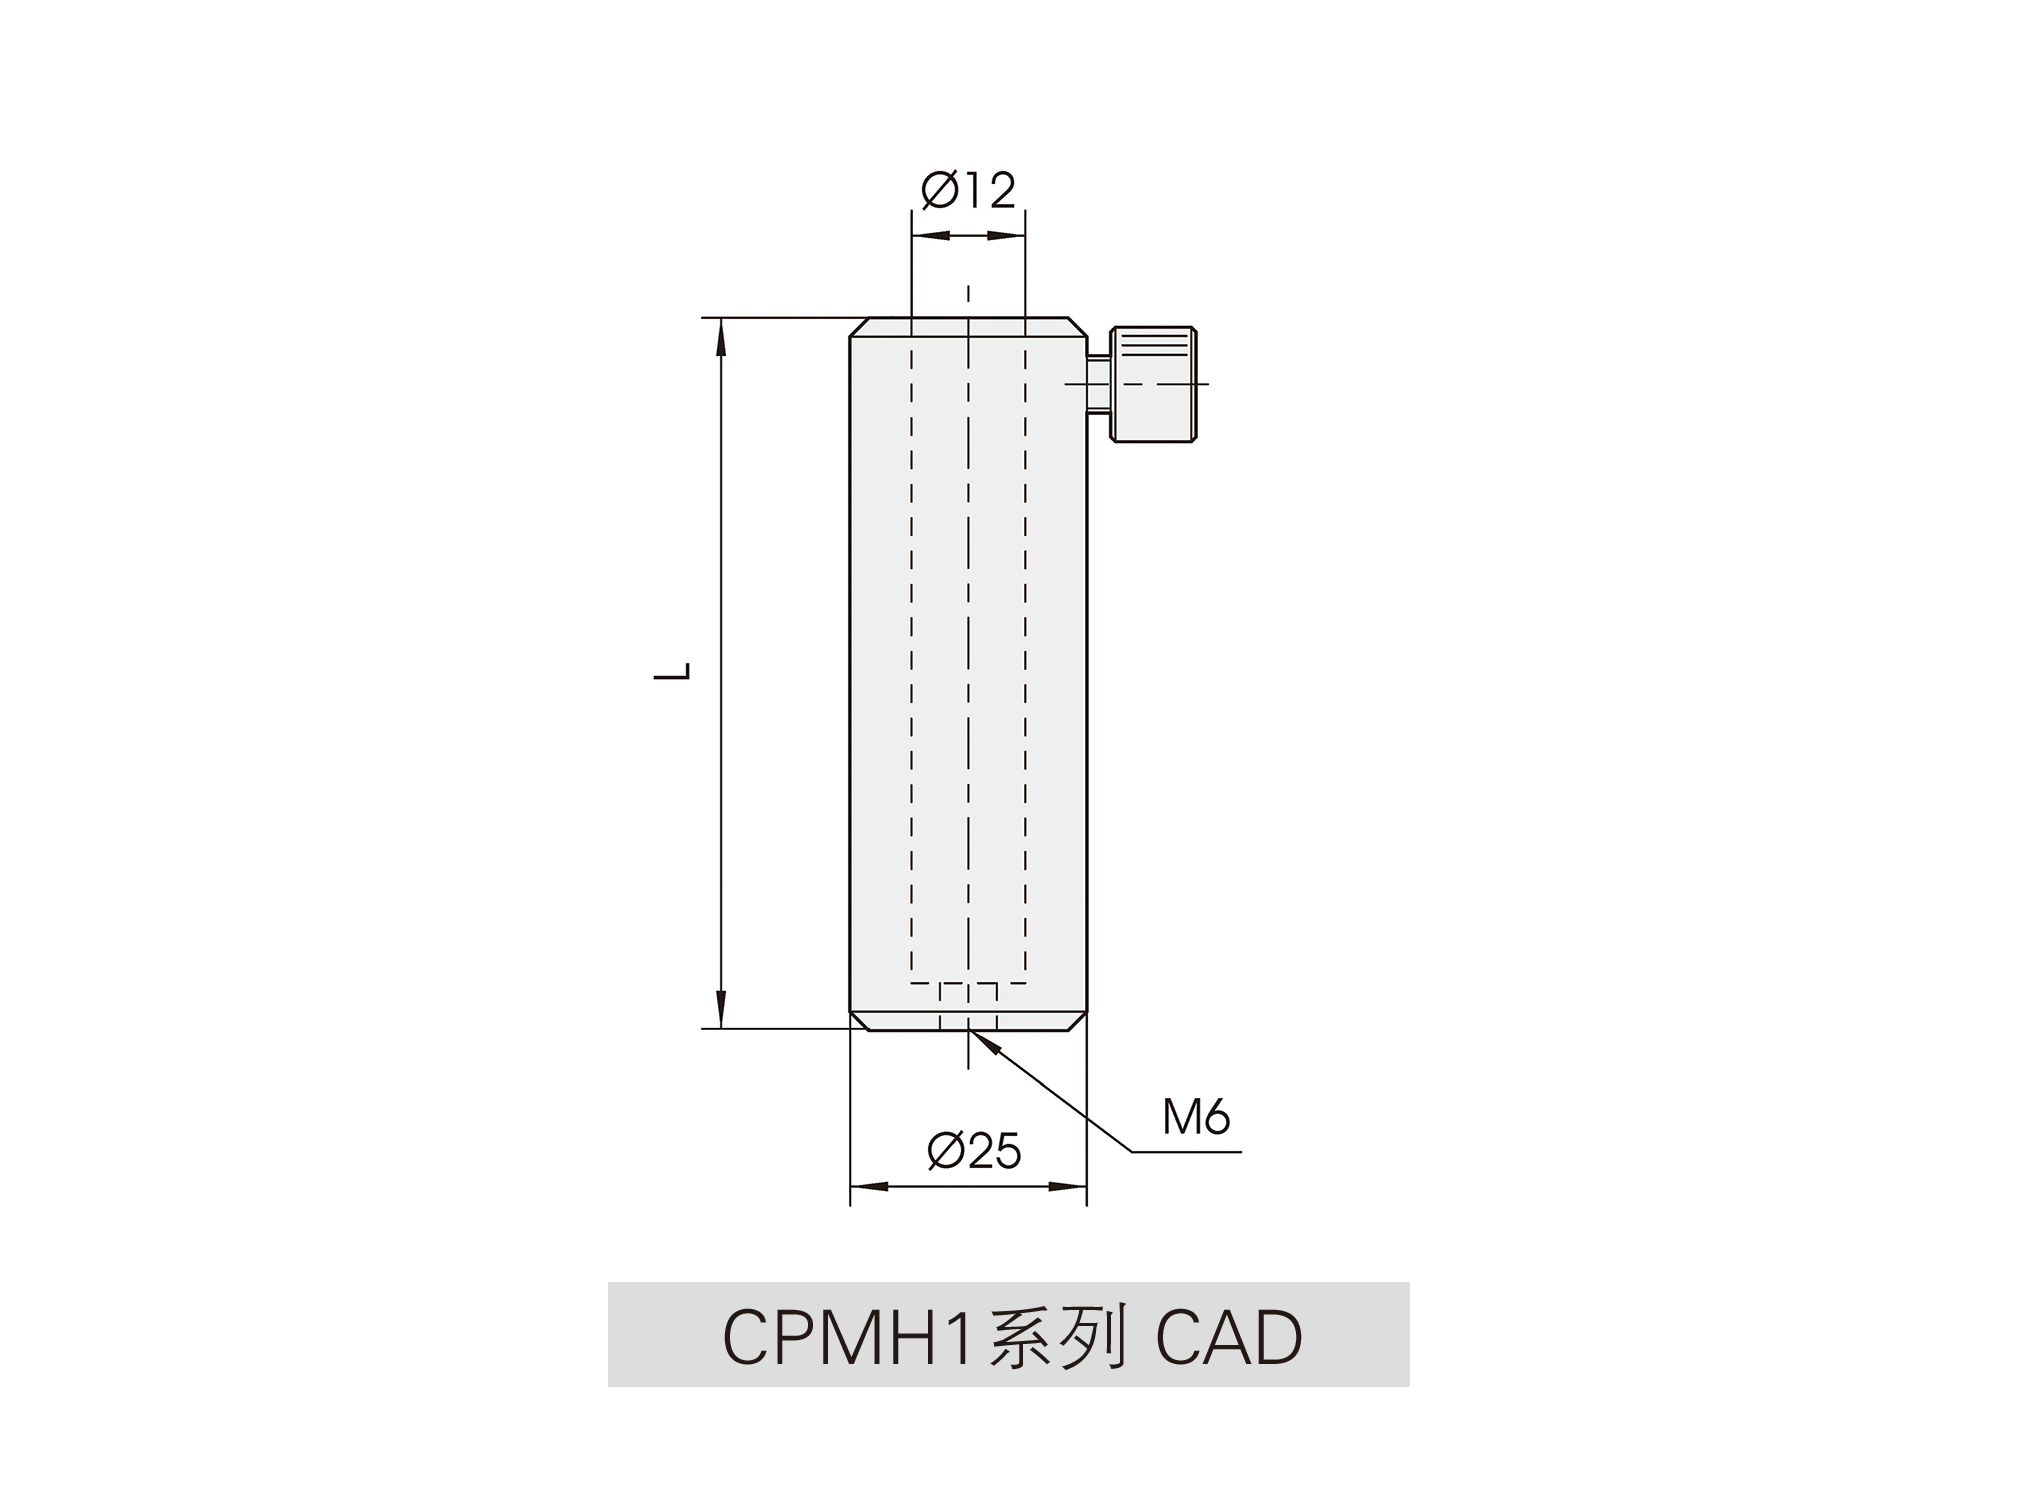 CPMH1系列杆架cad